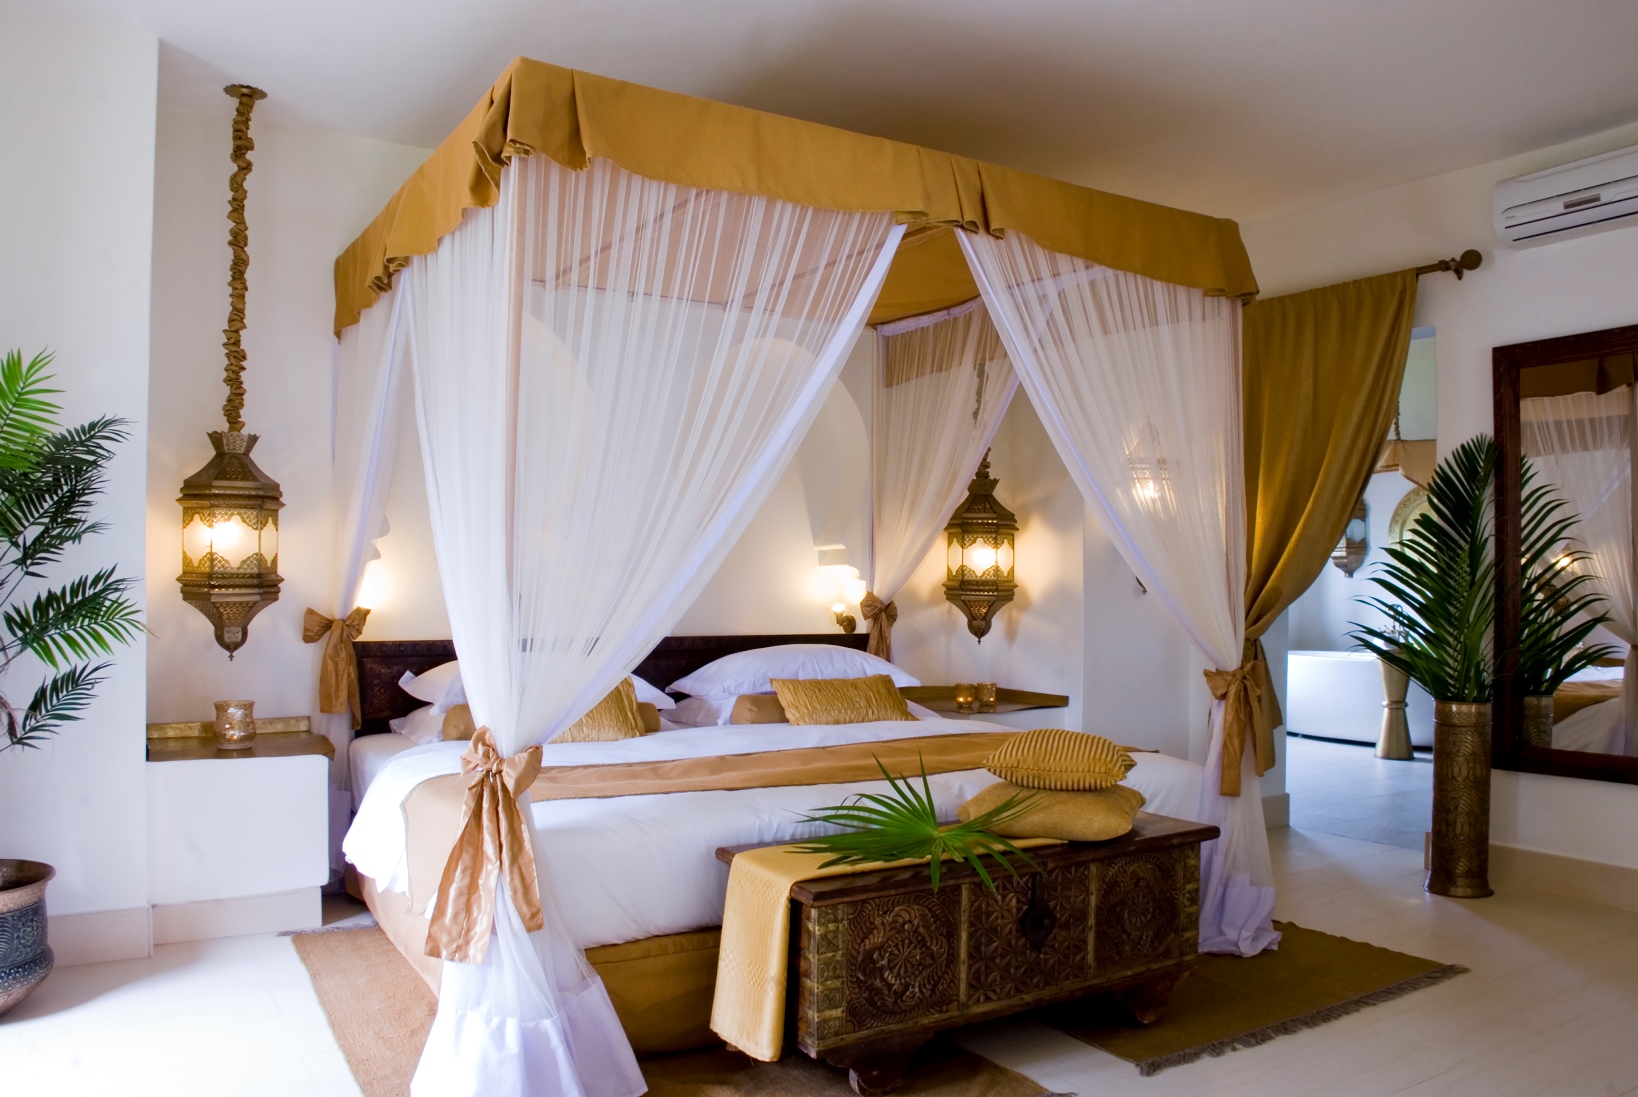 The bedroom of a villa at Bazara in Tanzania